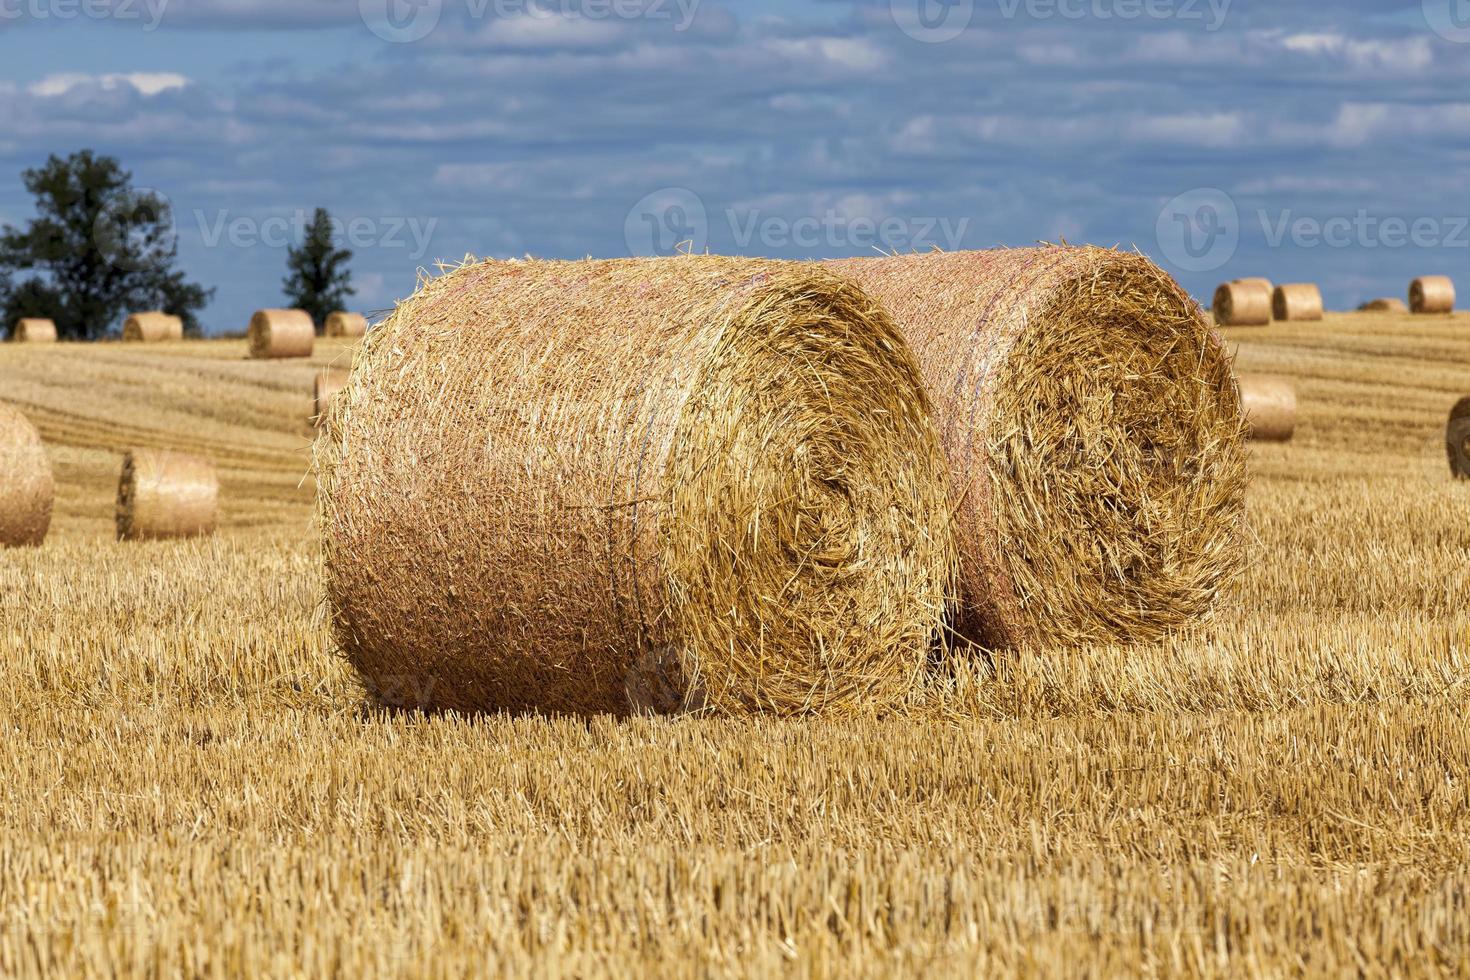 pilhas de palha de trigo foram deixadas após a colheita do trigo foto